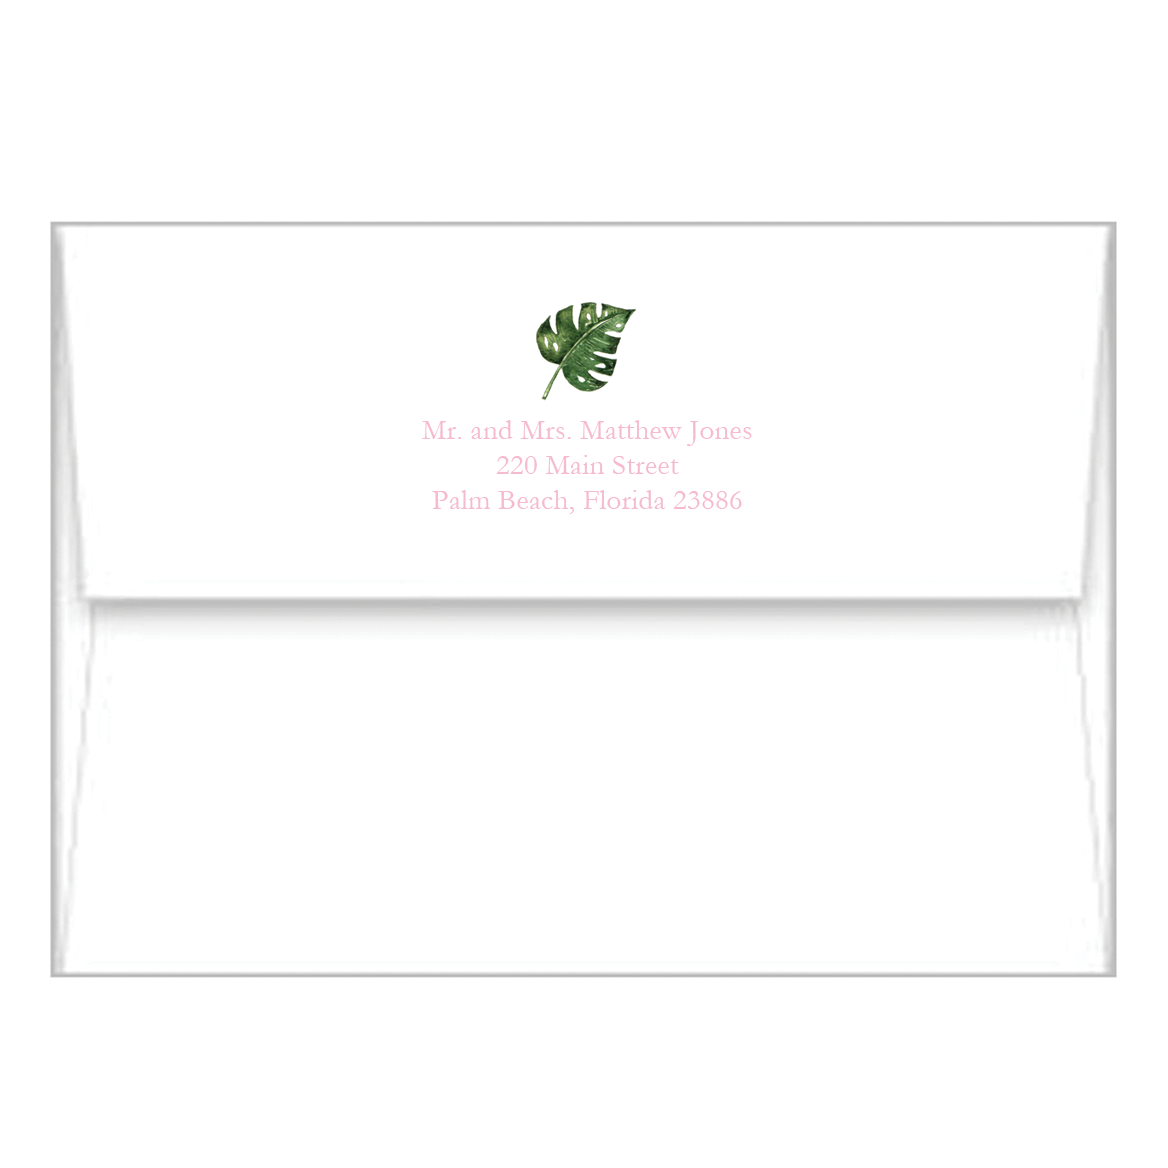 Monogrammed Palm Leaf Envelope Clutch